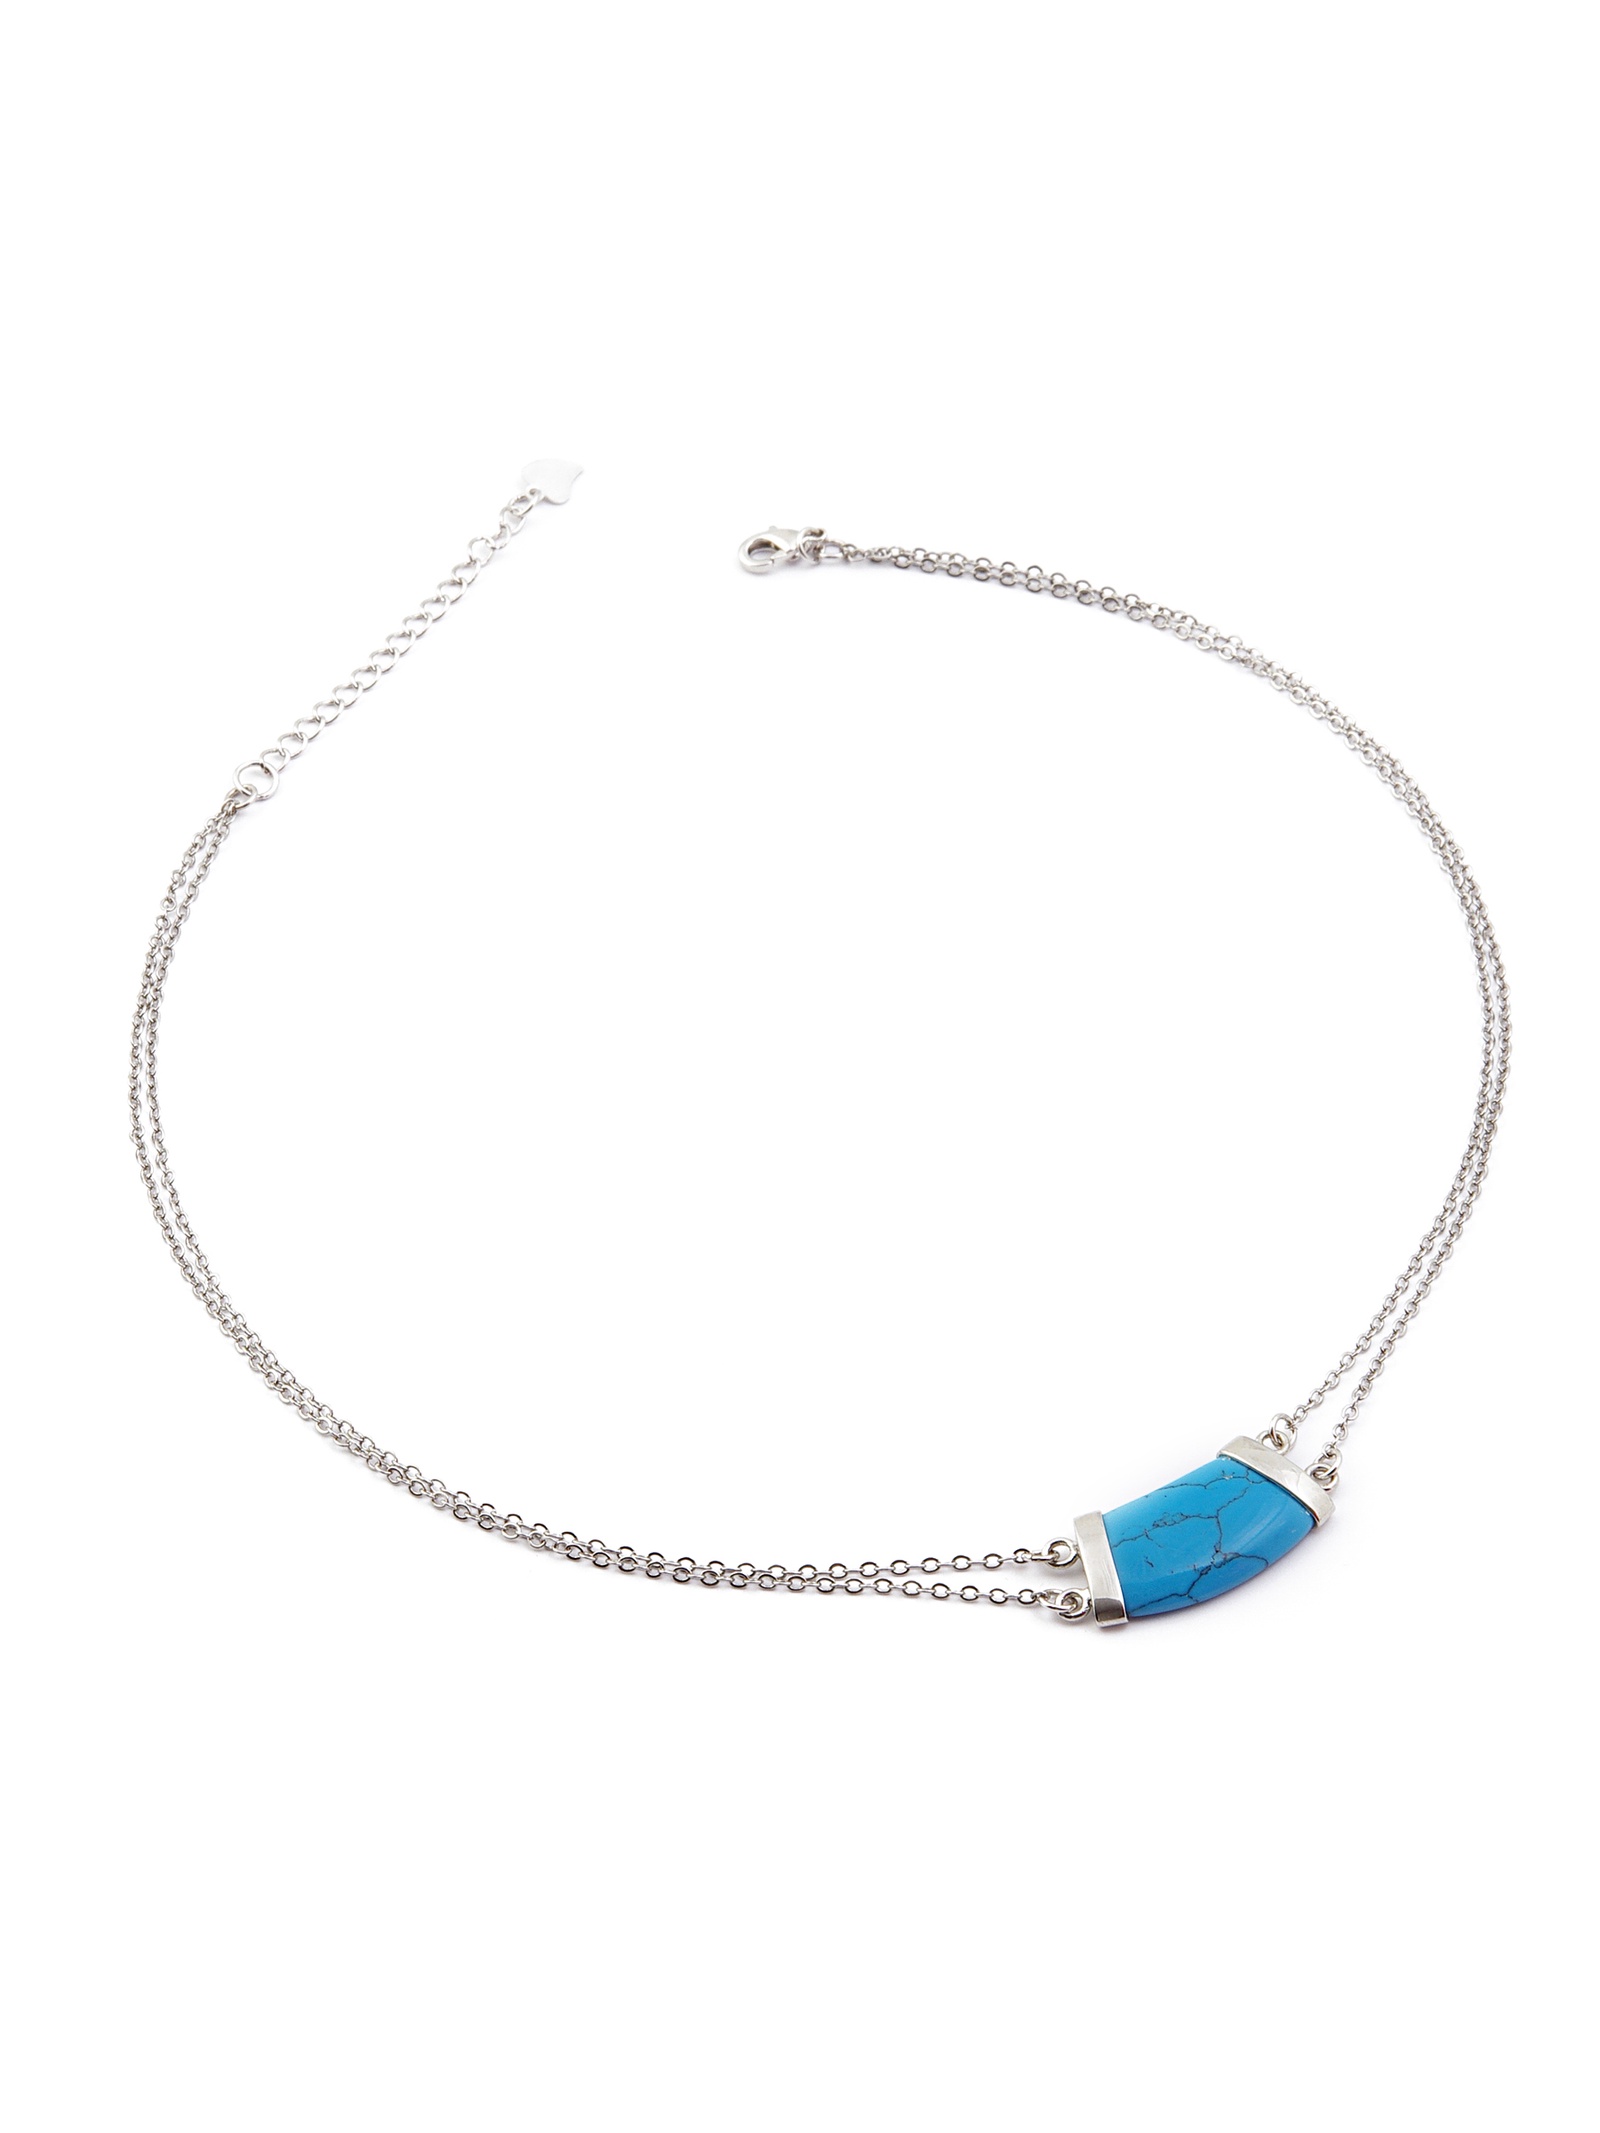 фото Колье/ожерелье бижутерное ЖемАрт Ц906-24, Бижутерный сплав, Бирюза искусственная, голубой, серебристый